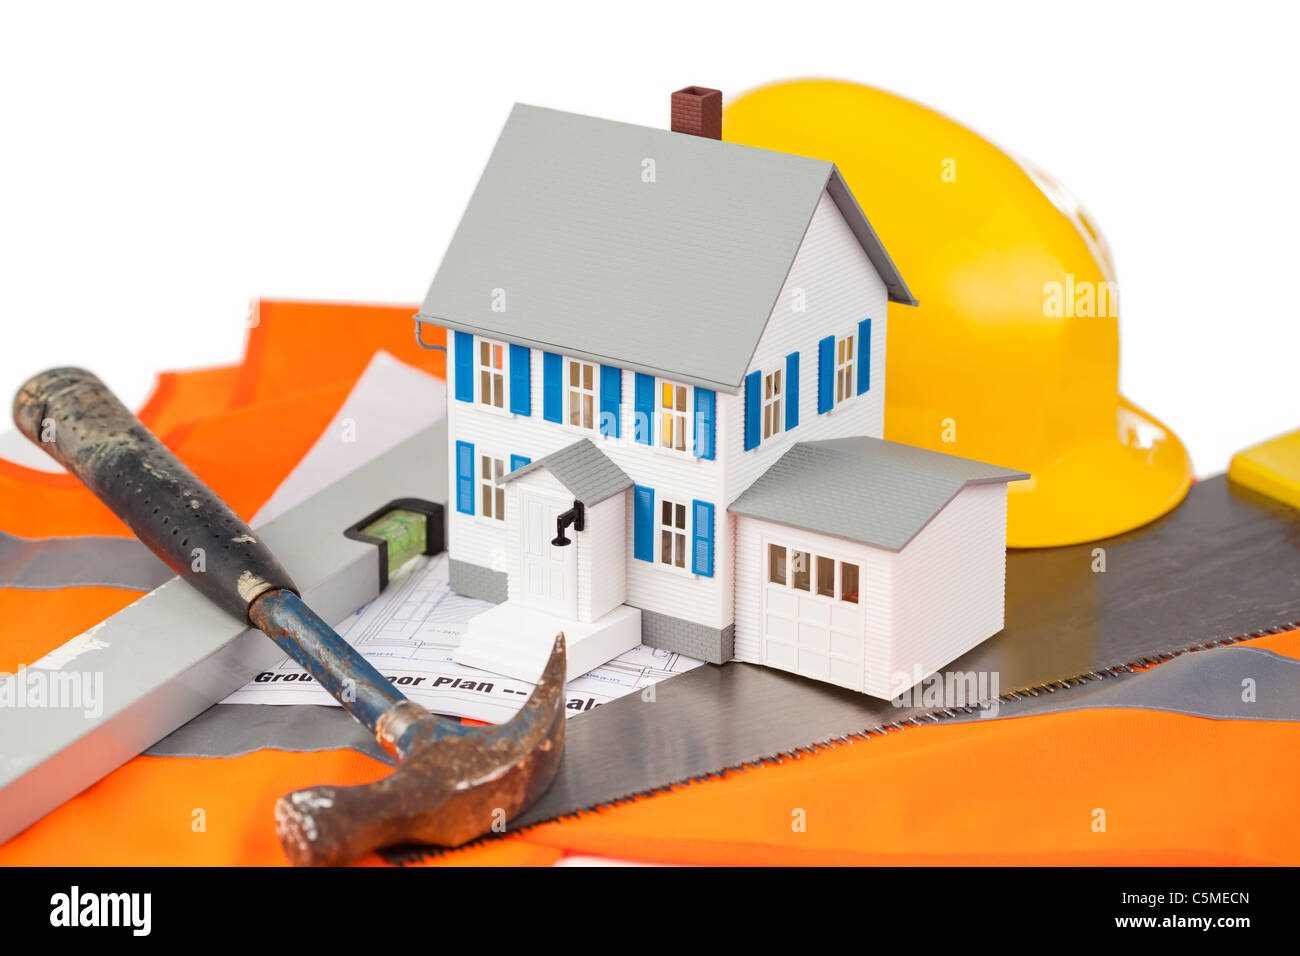 Tools and miniature house sur une veste orange Banque D'Images